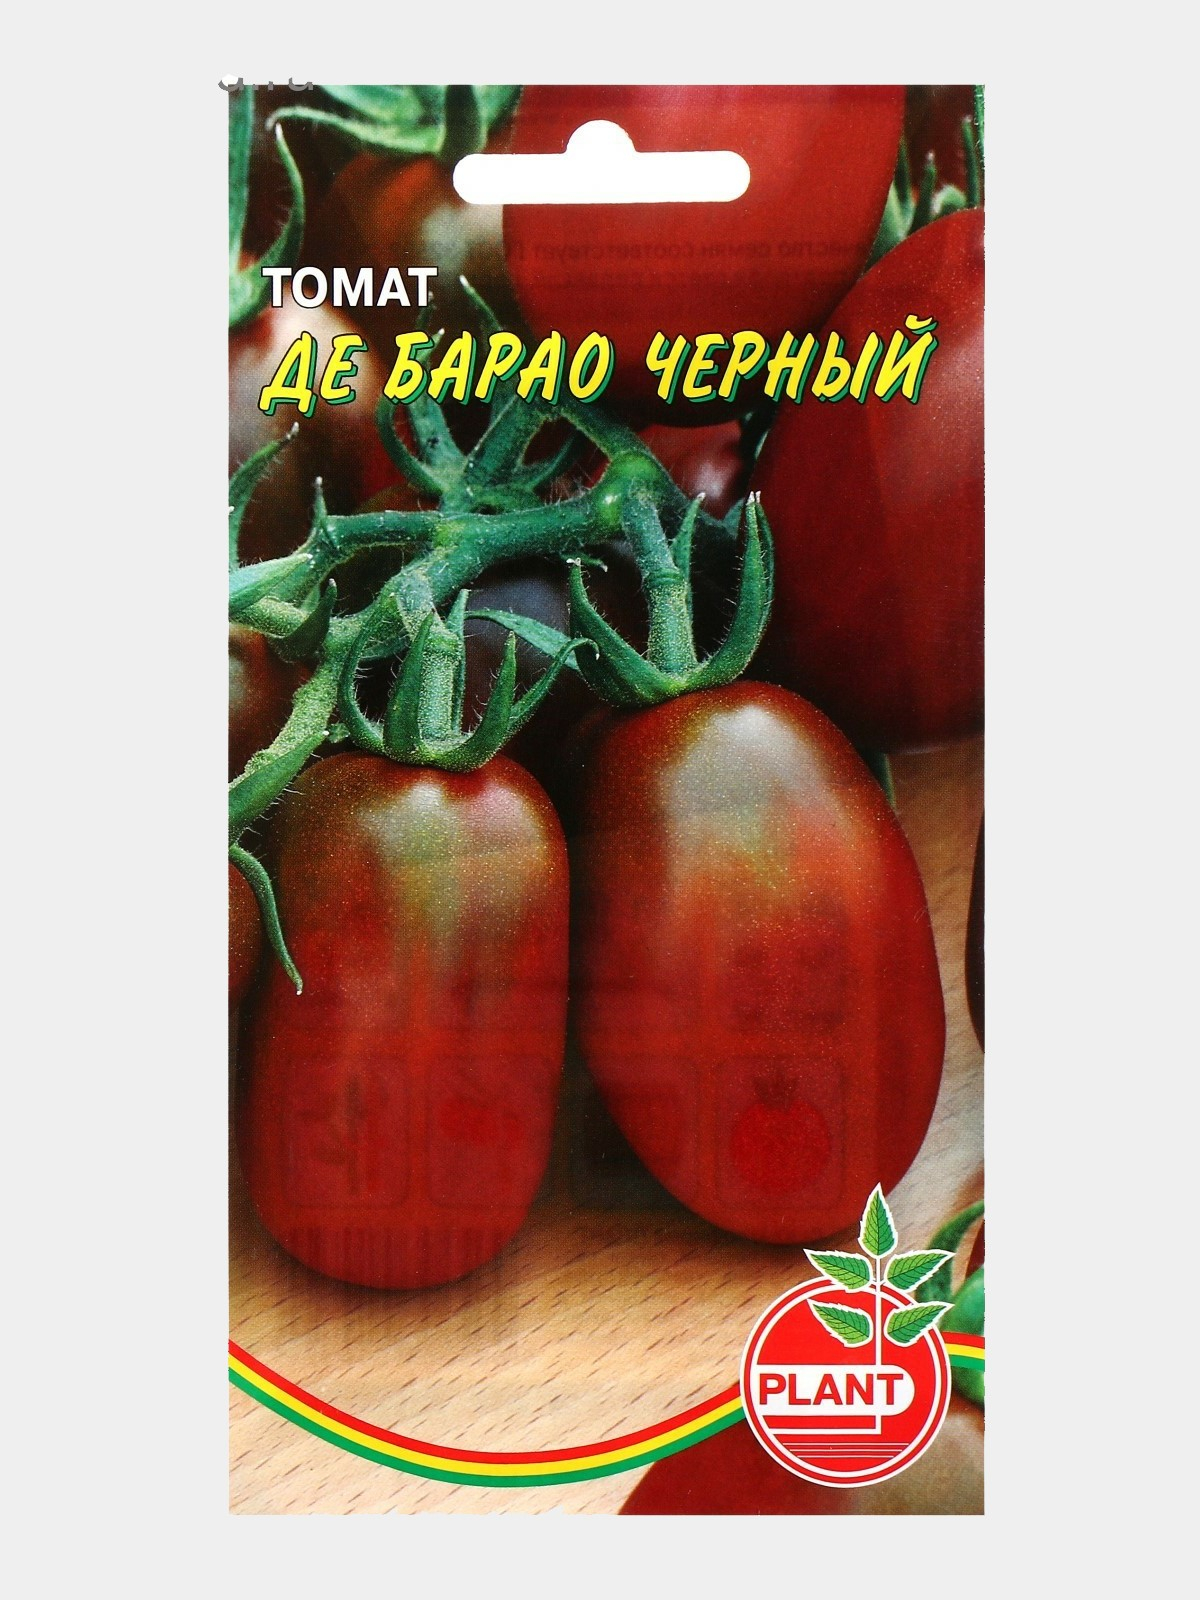 Де барао черный томат описание и фото